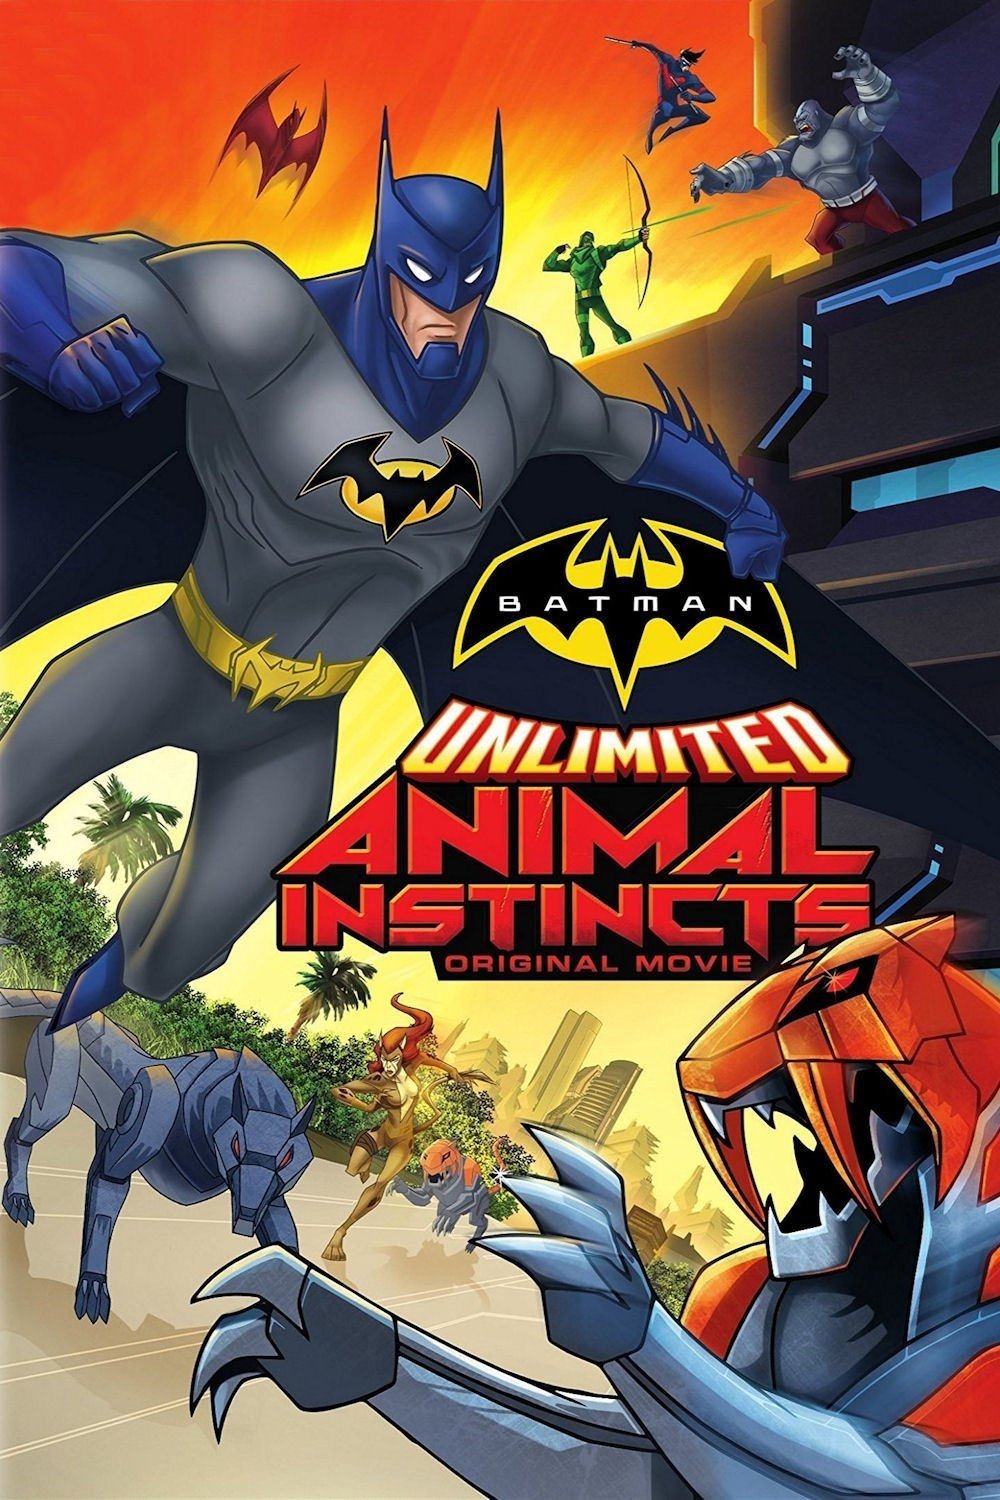 ბეტმენი: ცხოველური ინსტინქტი / Batman Unlimited: Animal Instincts ქართულად